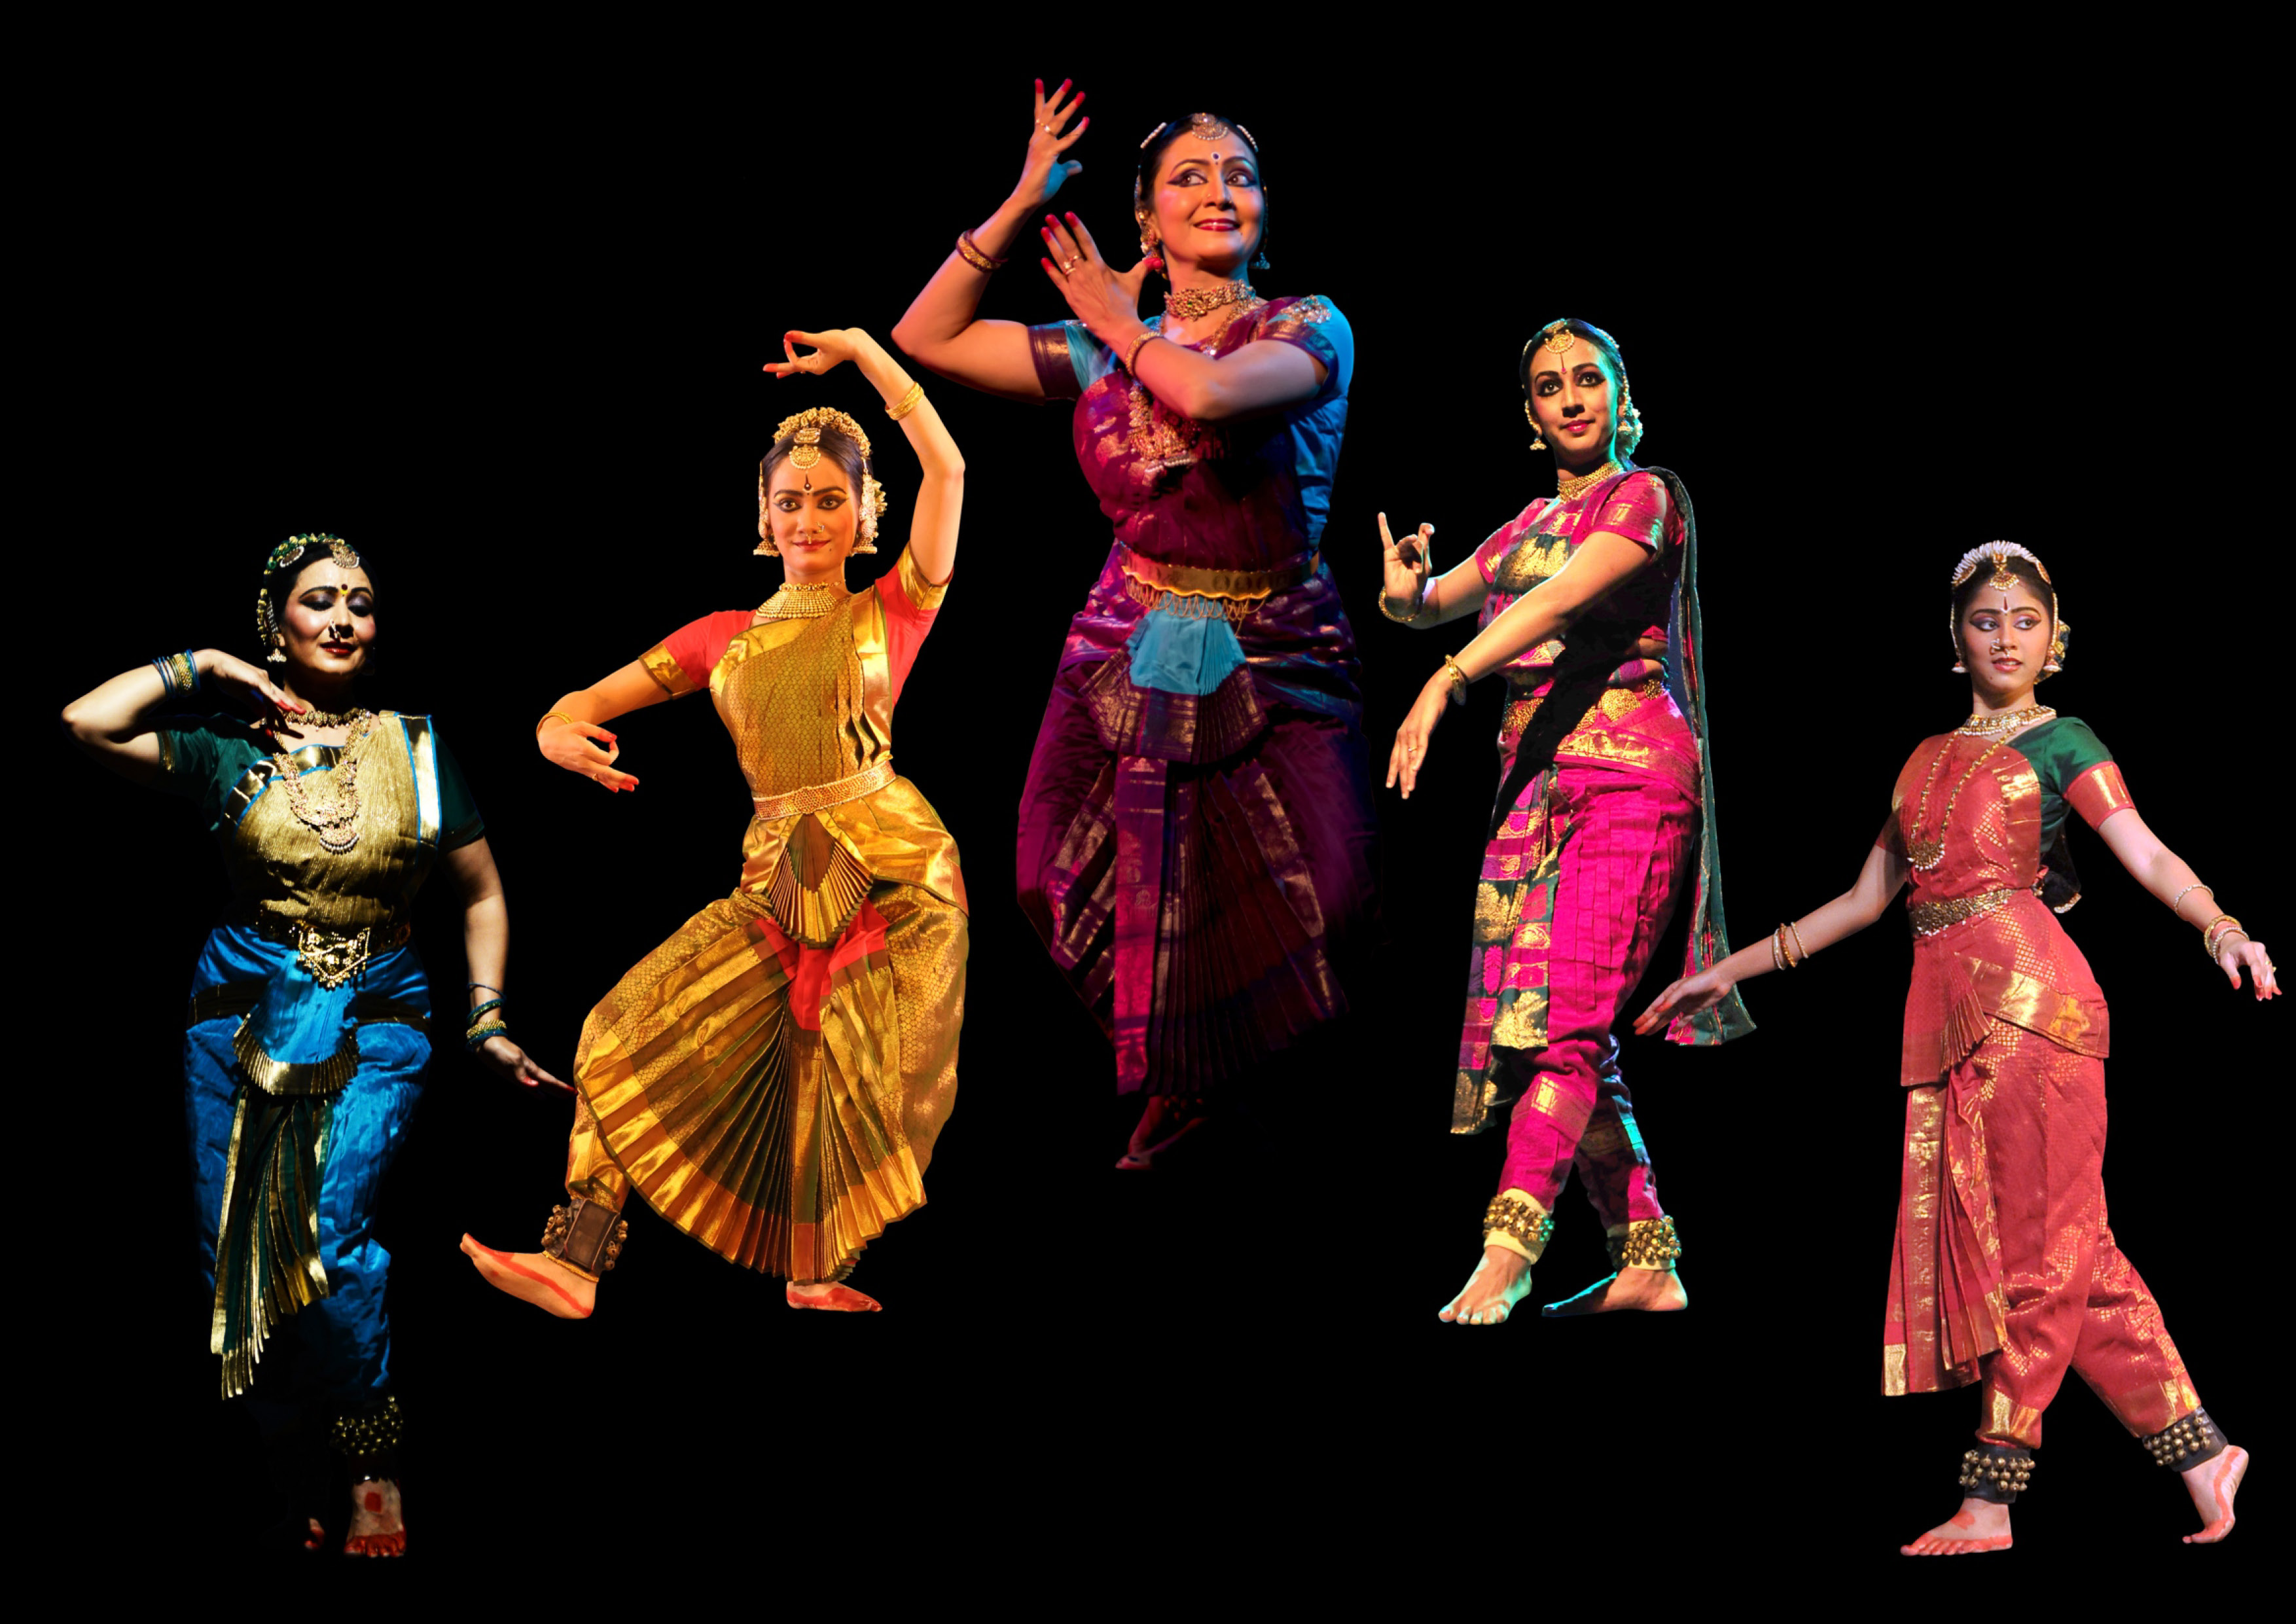 23 мая / Большой зал / 18:30 Концерт Индийского танцевального коллектива при поддержке Генерального консульства Индии во Владивостоке